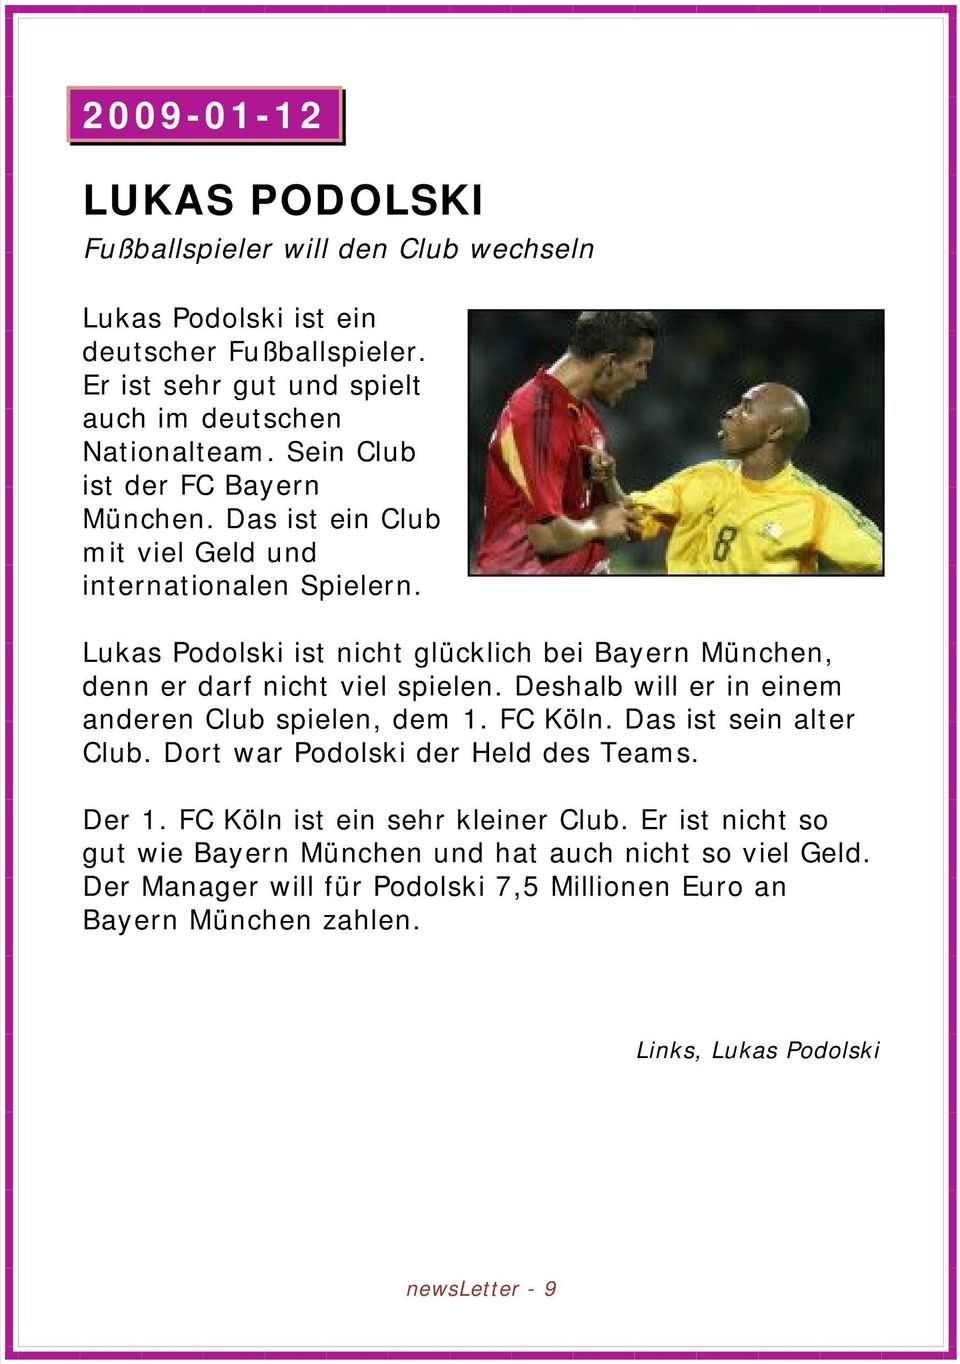 Lukas Podolski ist nicht glücklich bei Bayern München, denn er darf nicht viel spielen. Deshalb will er in einem anderen Club spielen, dem 1. FC Köln. Das ist sein alter Club.